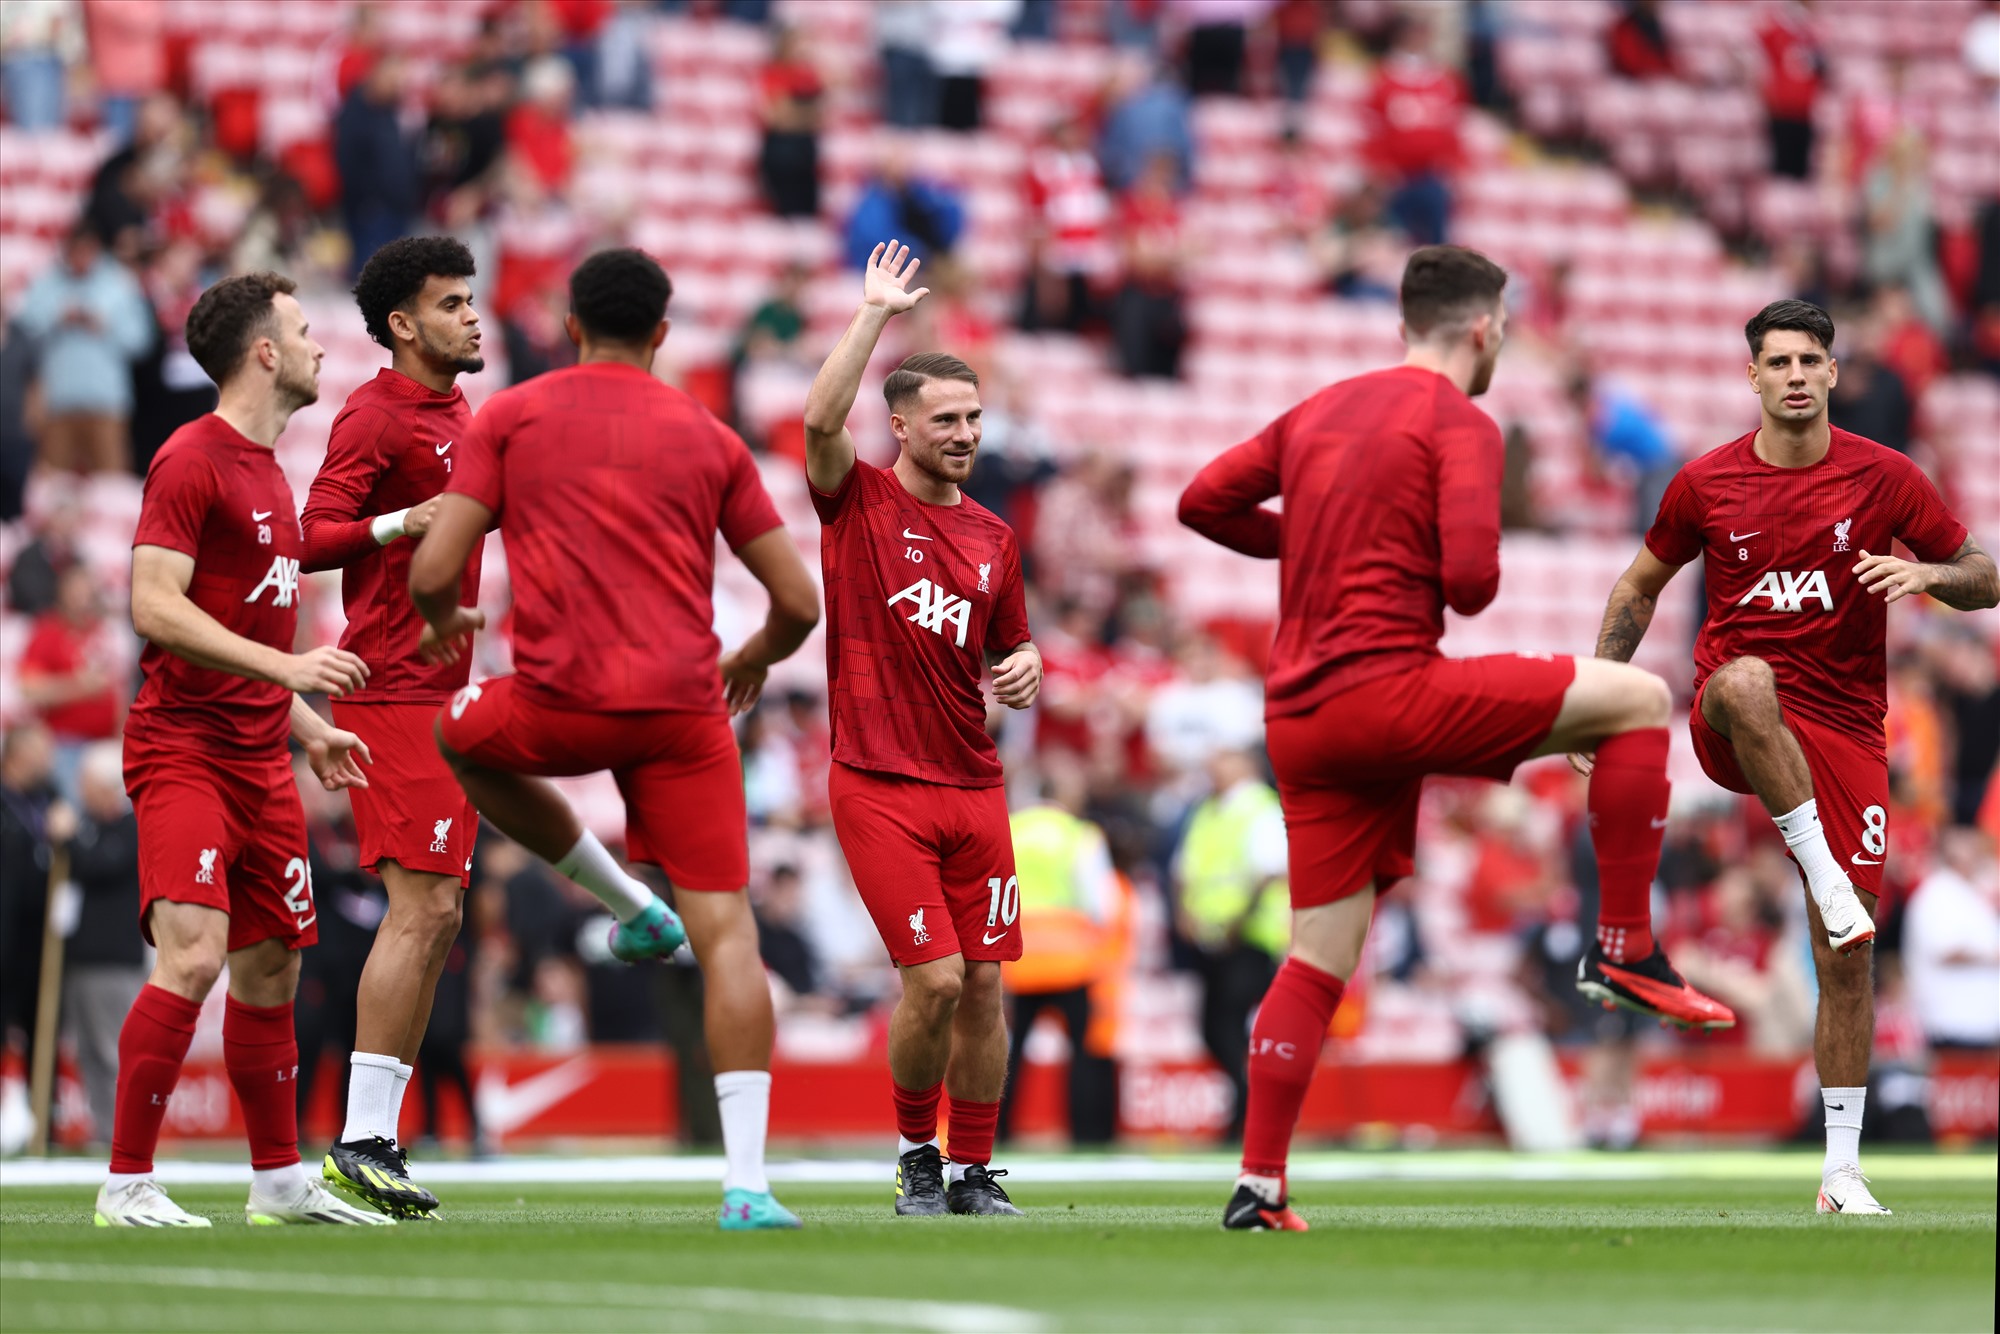 Liverpool sẽ tiếp tục có đội hình mạnh nhất khi hành quân đến sân của Newcastle. Ảnh: AFP